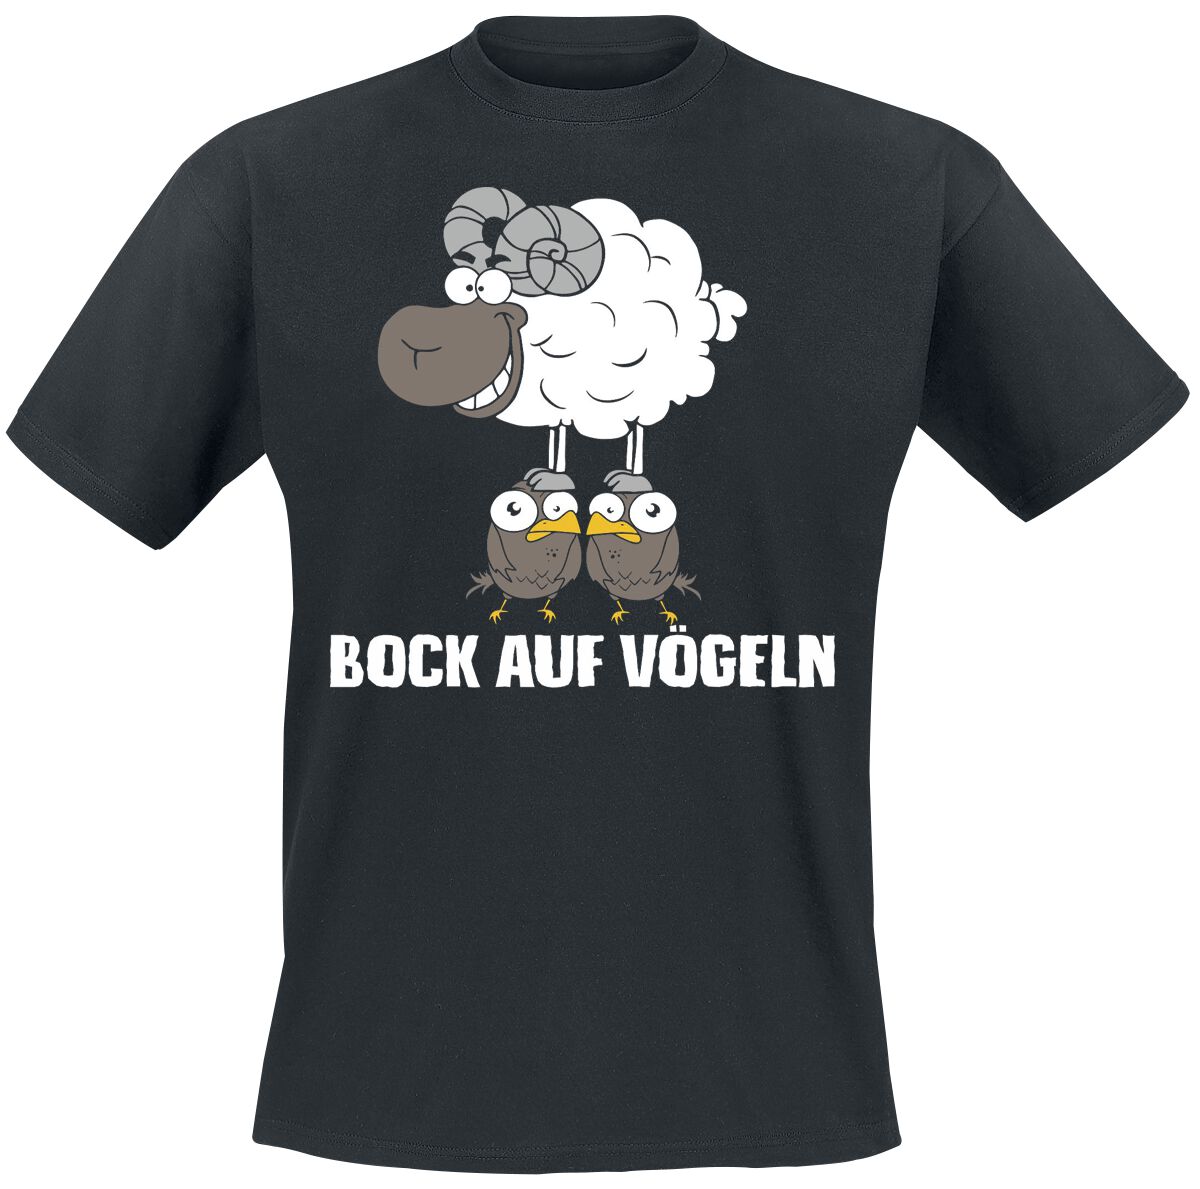 Tierisch T-Shirt - Bock auf Vögeln - XL bis 4XL - für Männer - Größe 4XL - schwarz